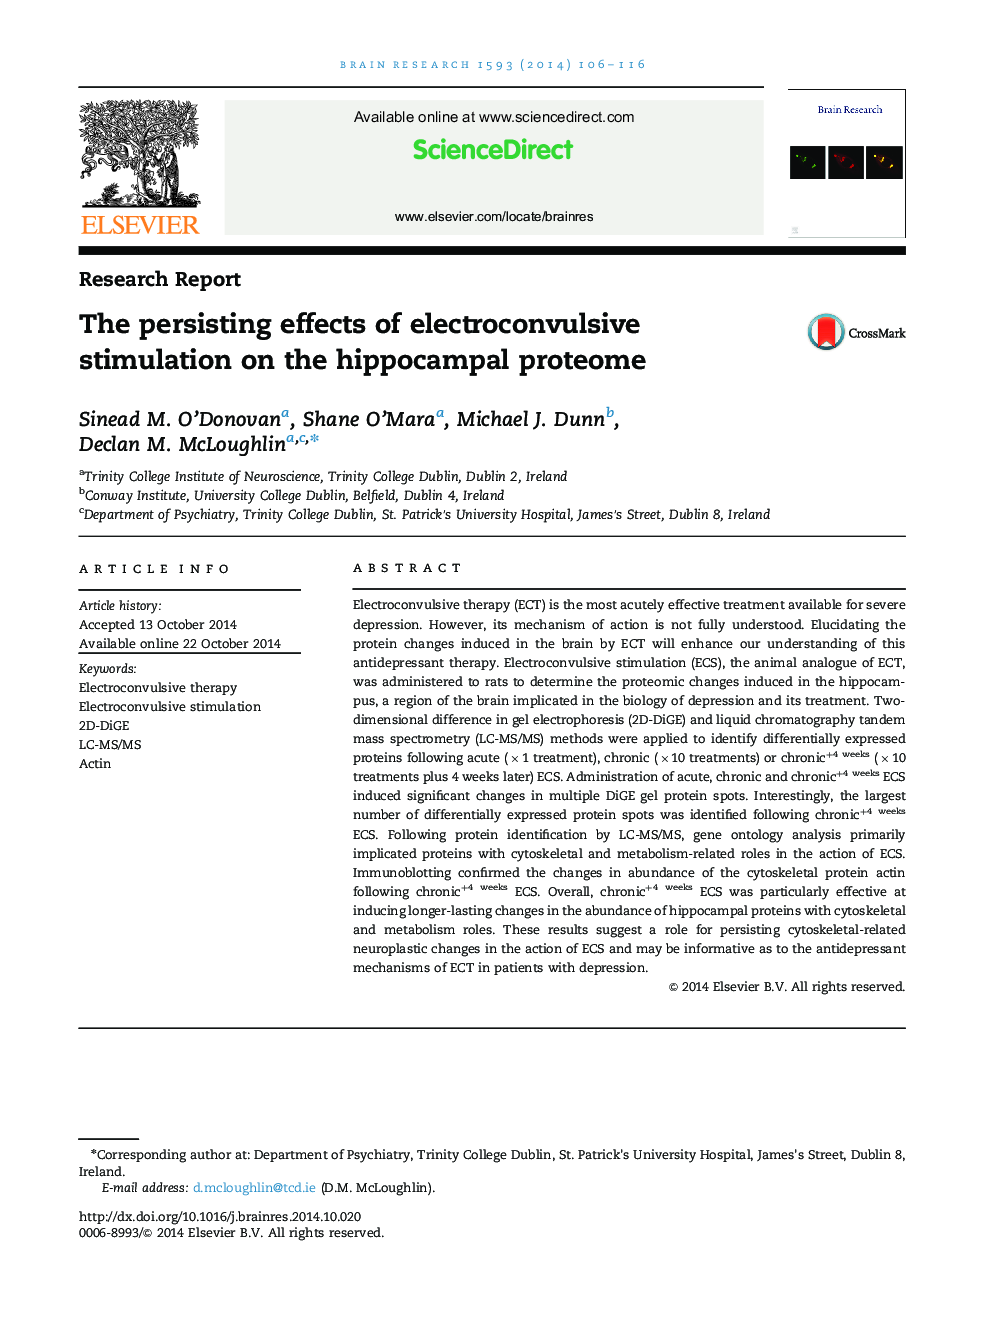 اثرات ماندگار تحریک الکتریکی در پروتئوم هیپوکمپ 